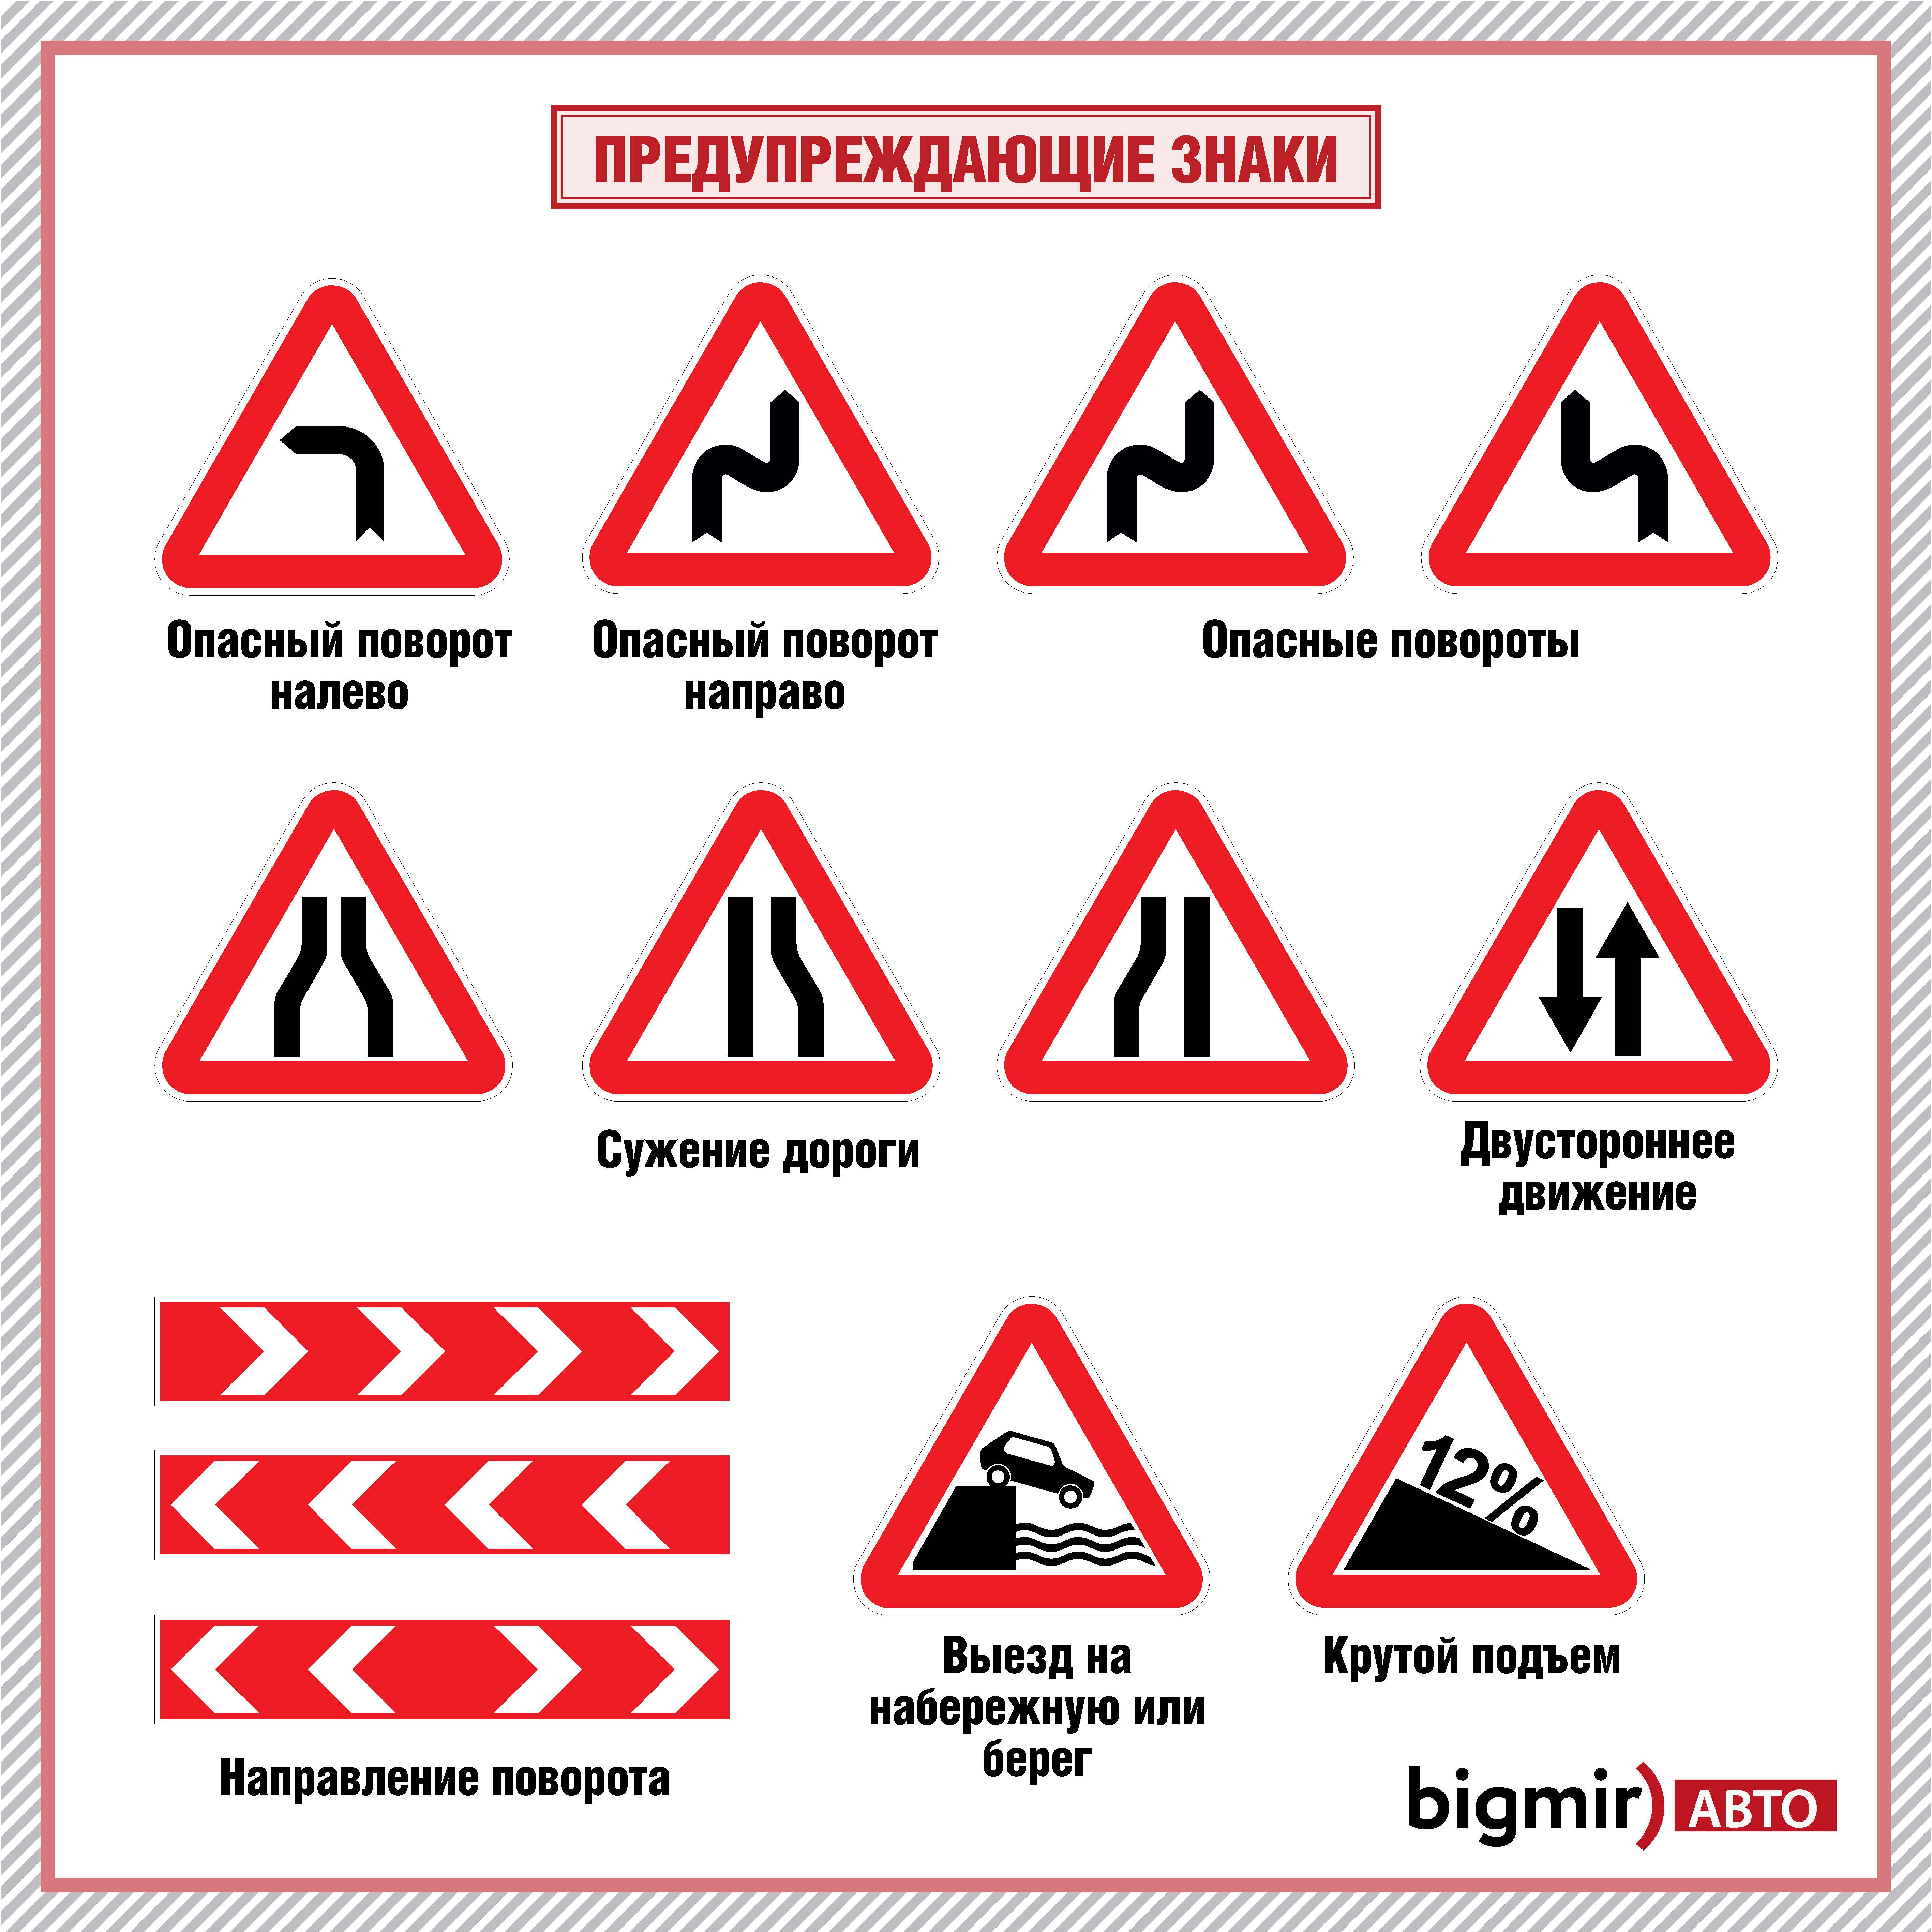 Предупреждающие знаки Украины